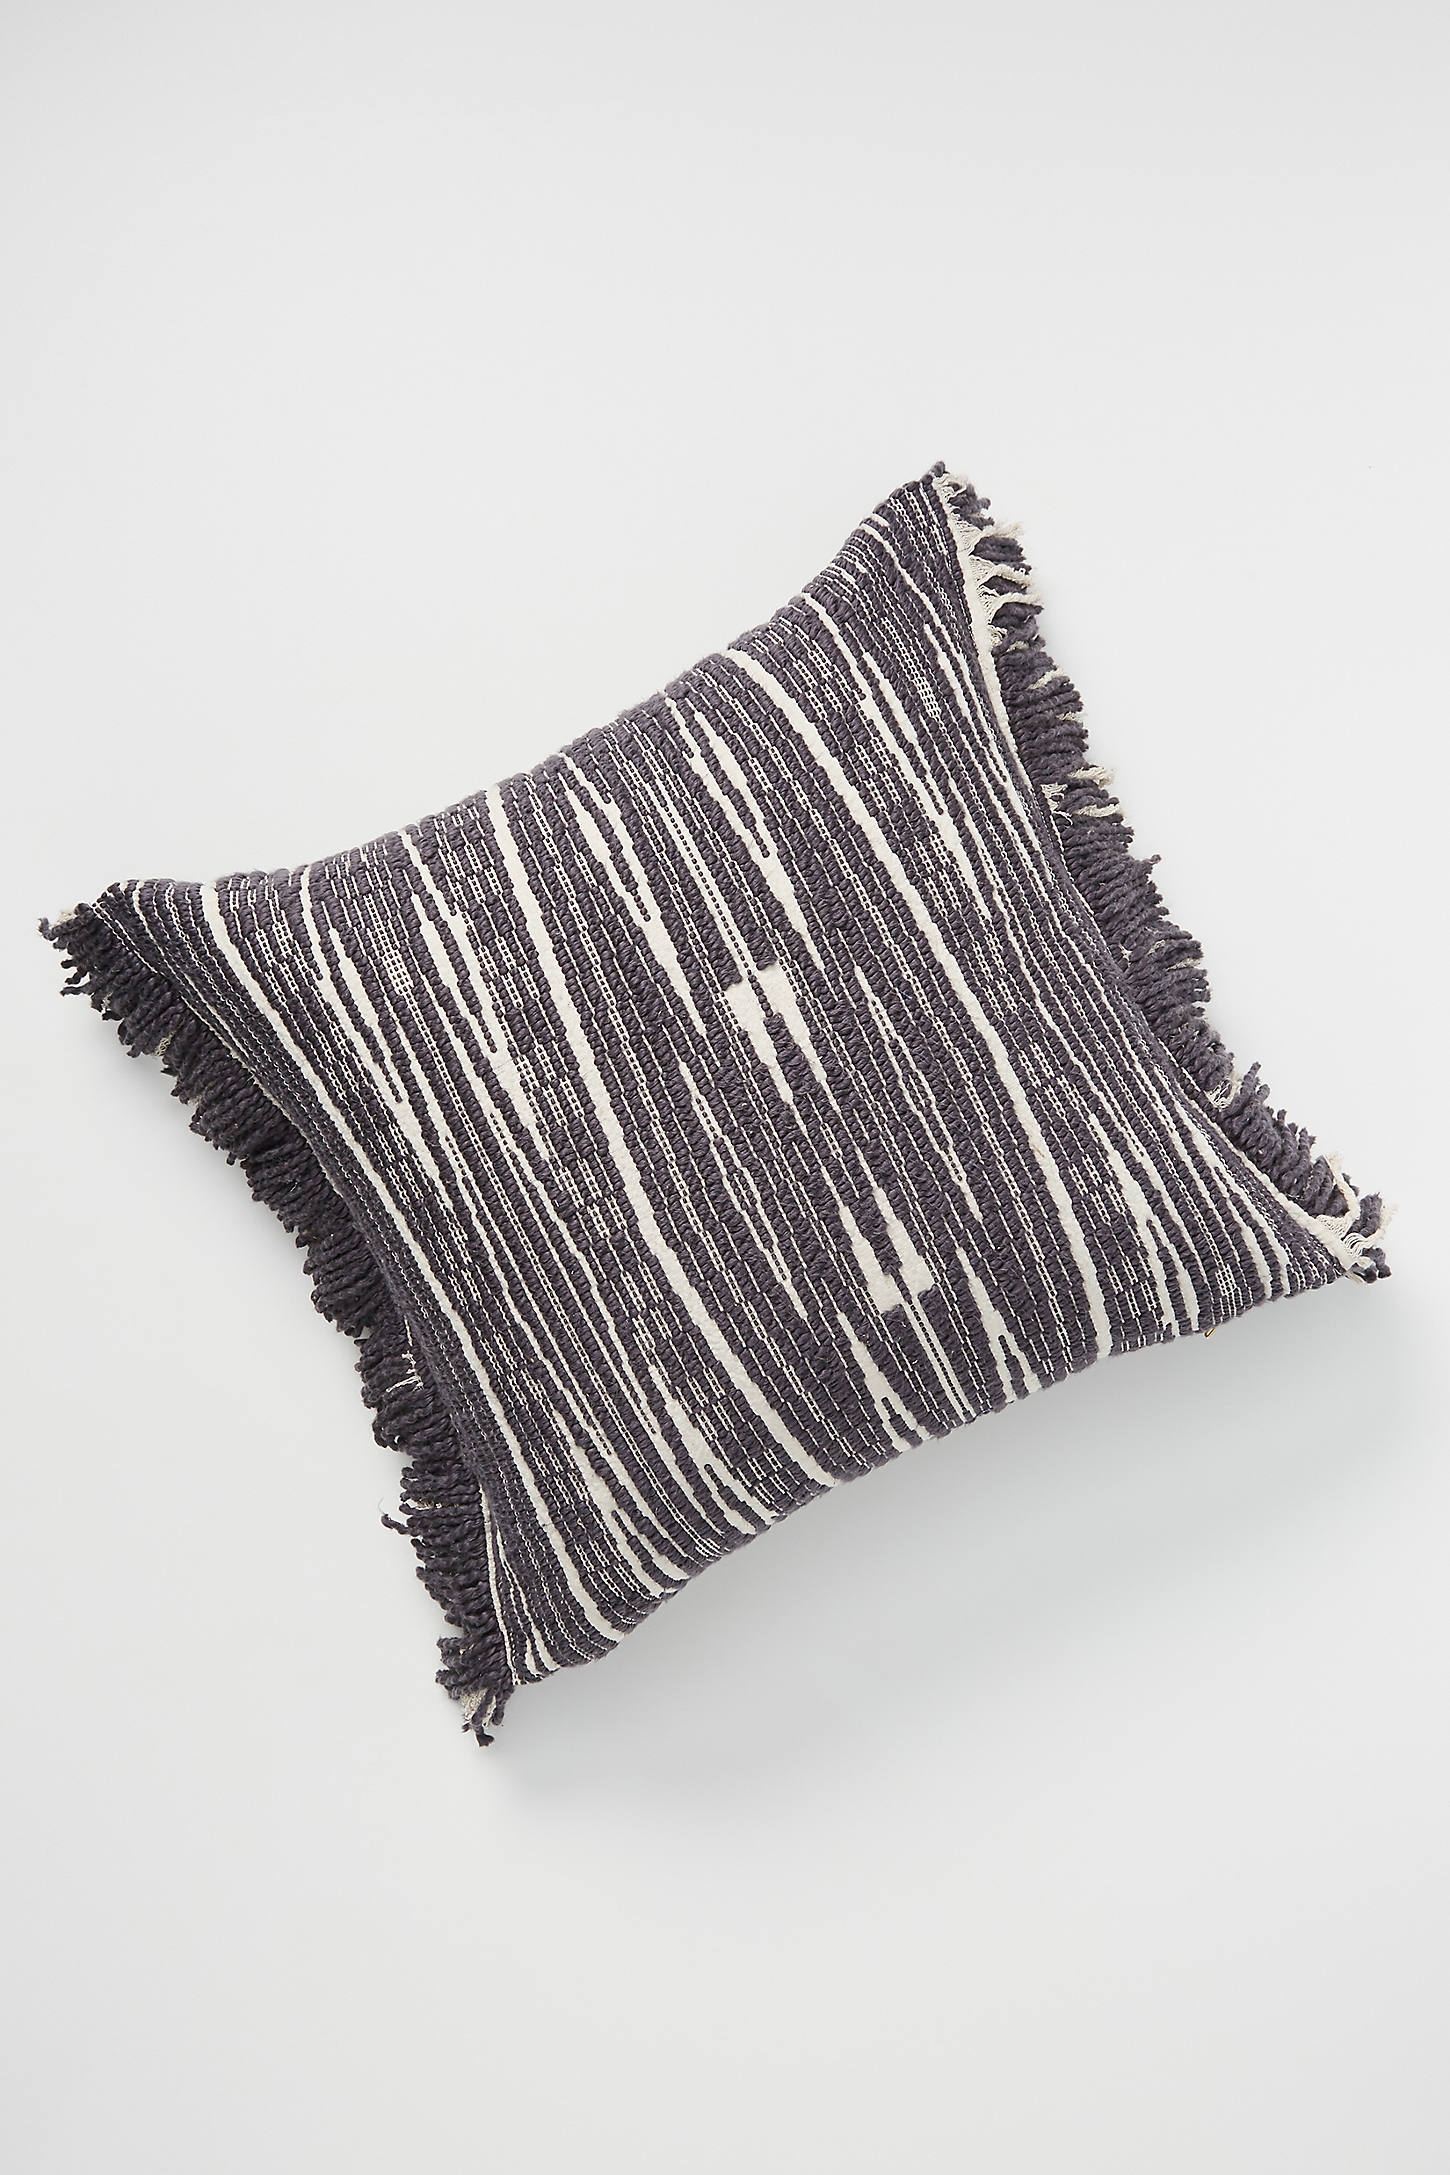 Textured Kadin Pillow - Image 0